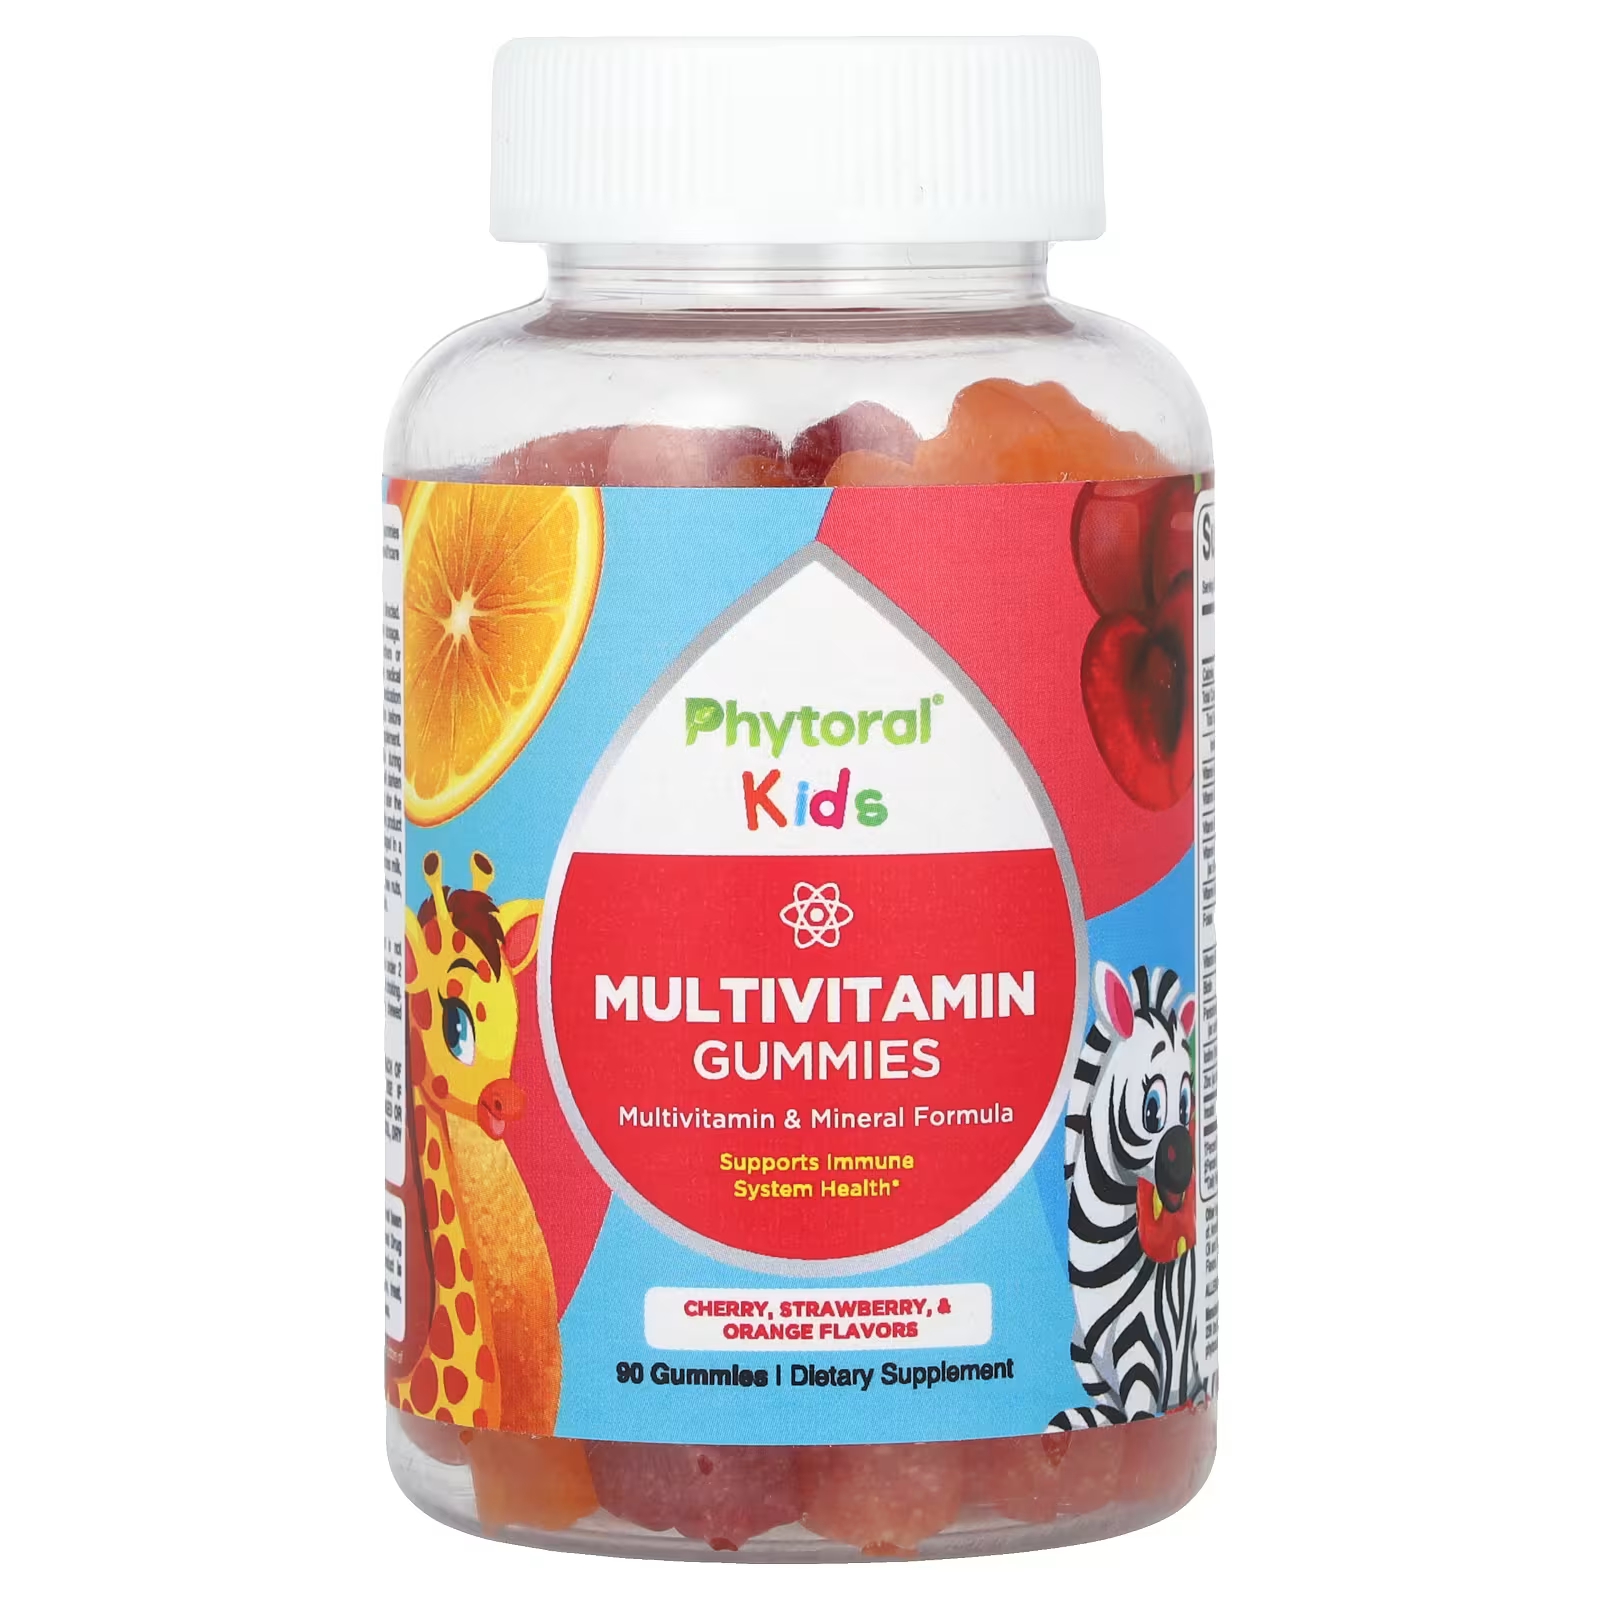 Мультивитаминны Phytoral Kids с вишней, клубникой и апельсином, 90 штук